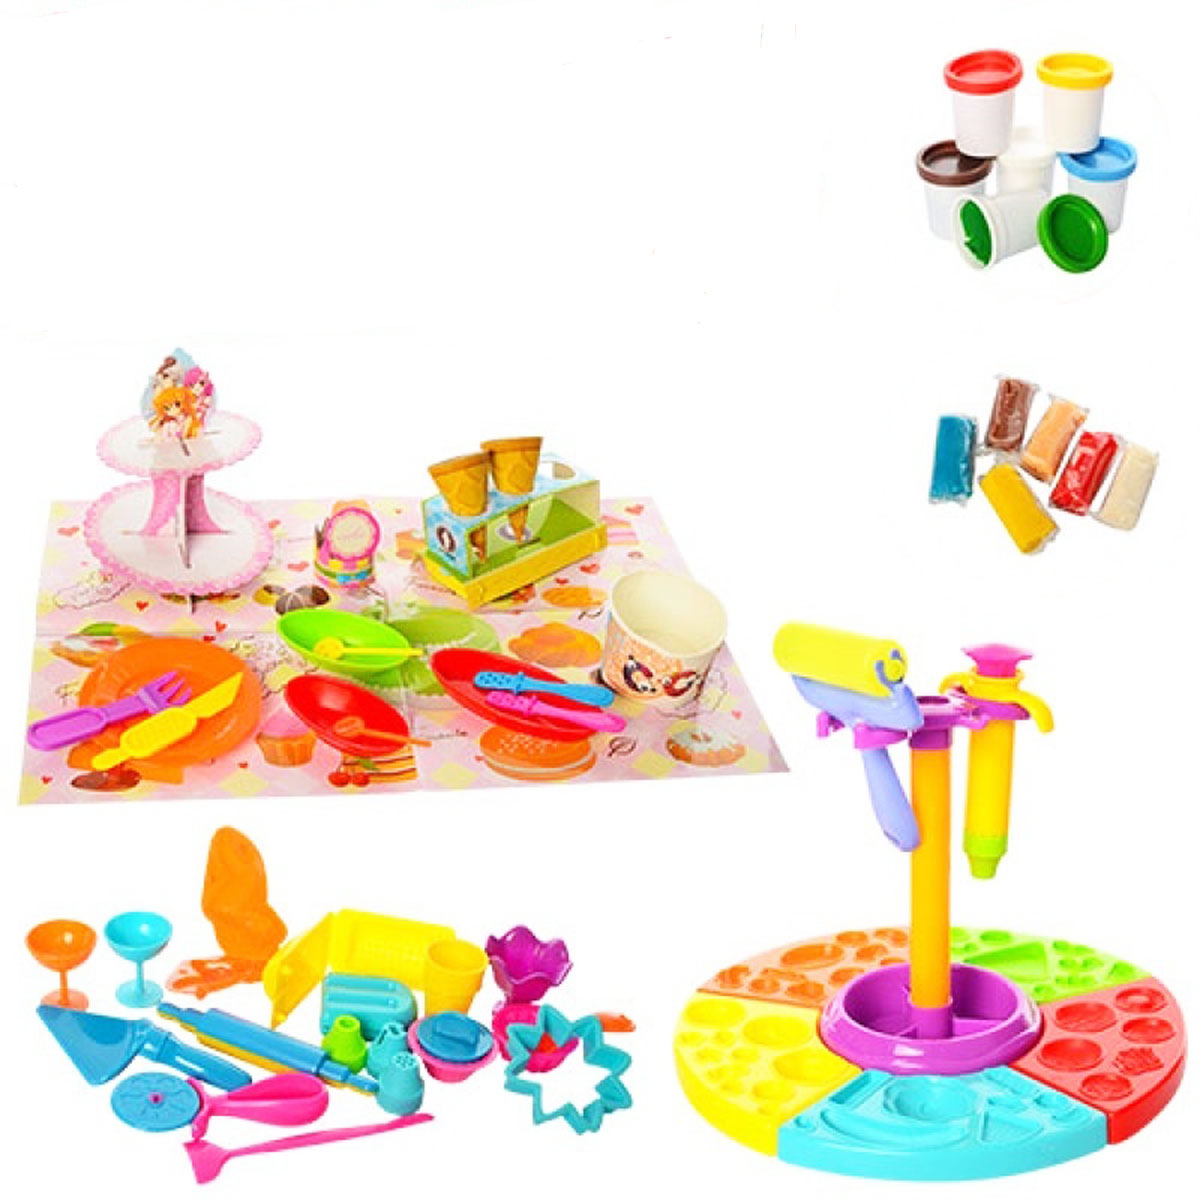 Игровой набор с пластилином 6 цветов 2 вида